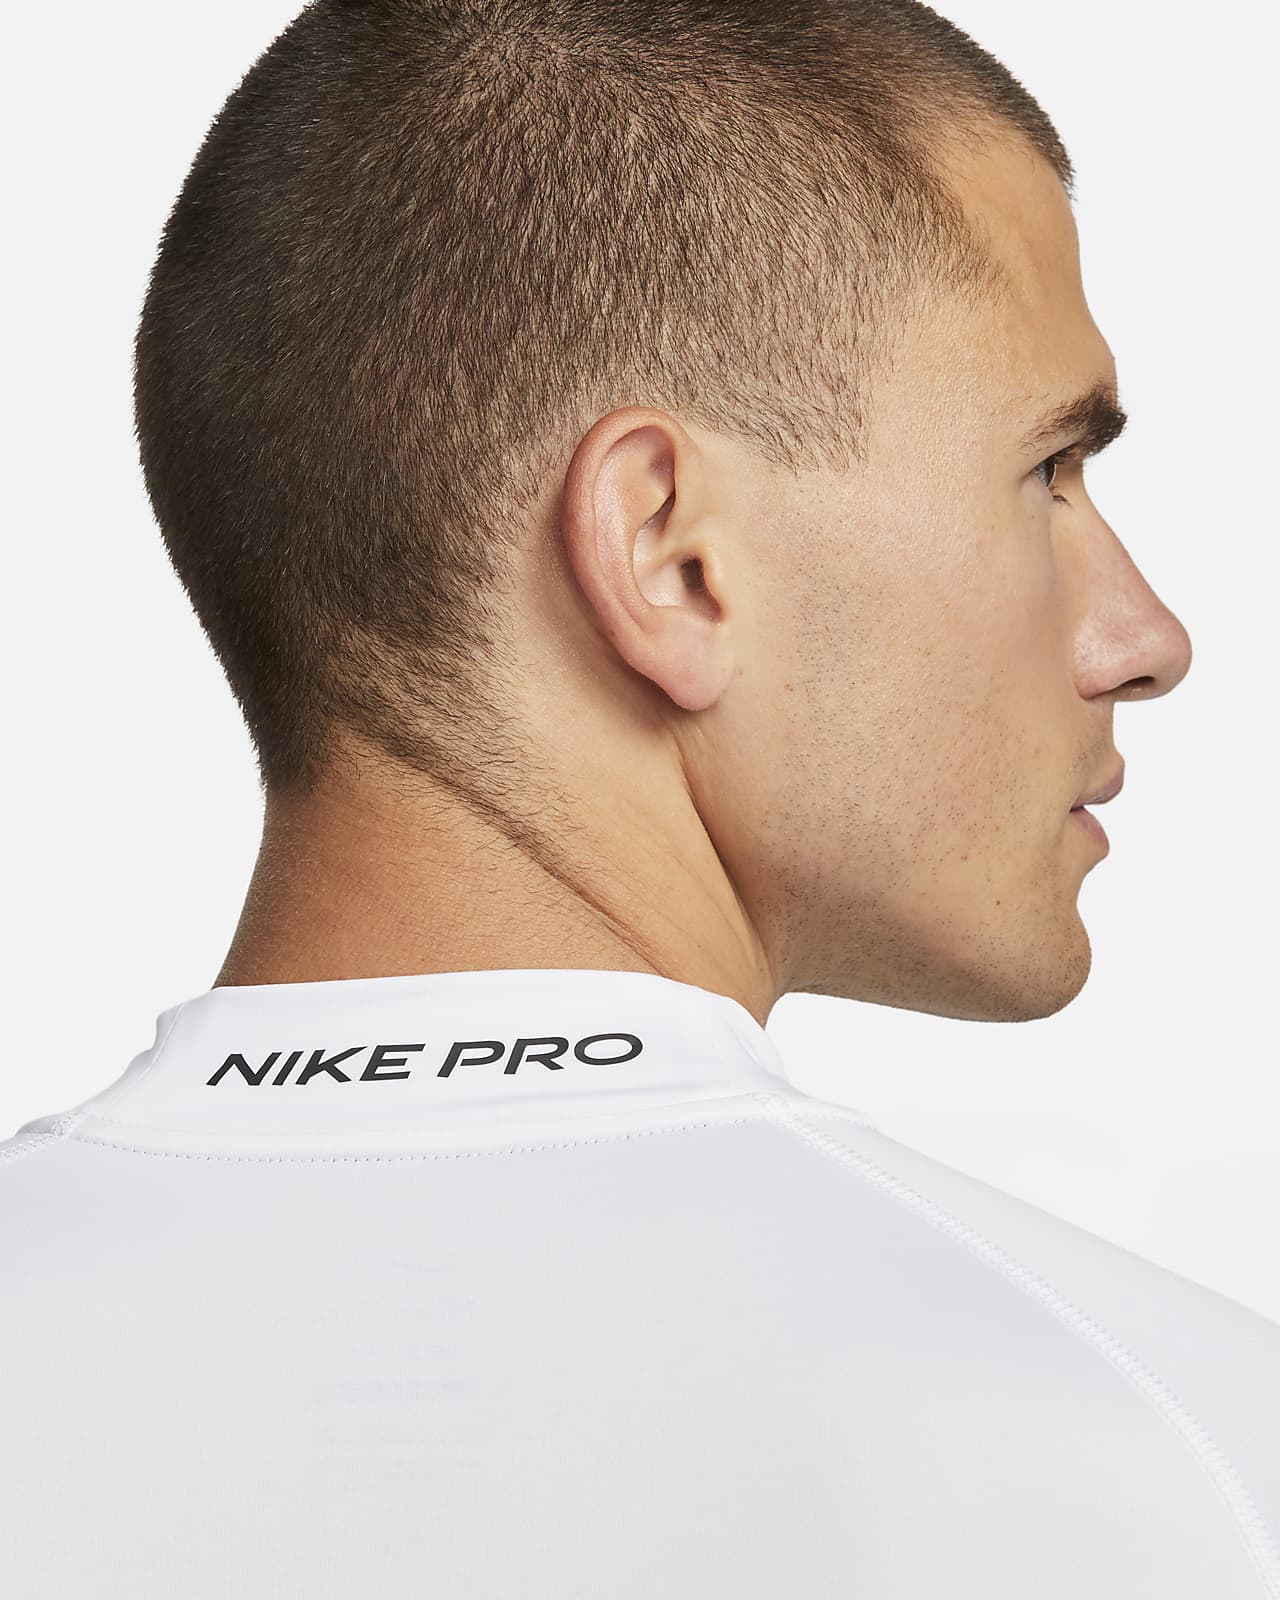 Nike Pro Men's Dri-FIT Fitness Tights. Nike LU